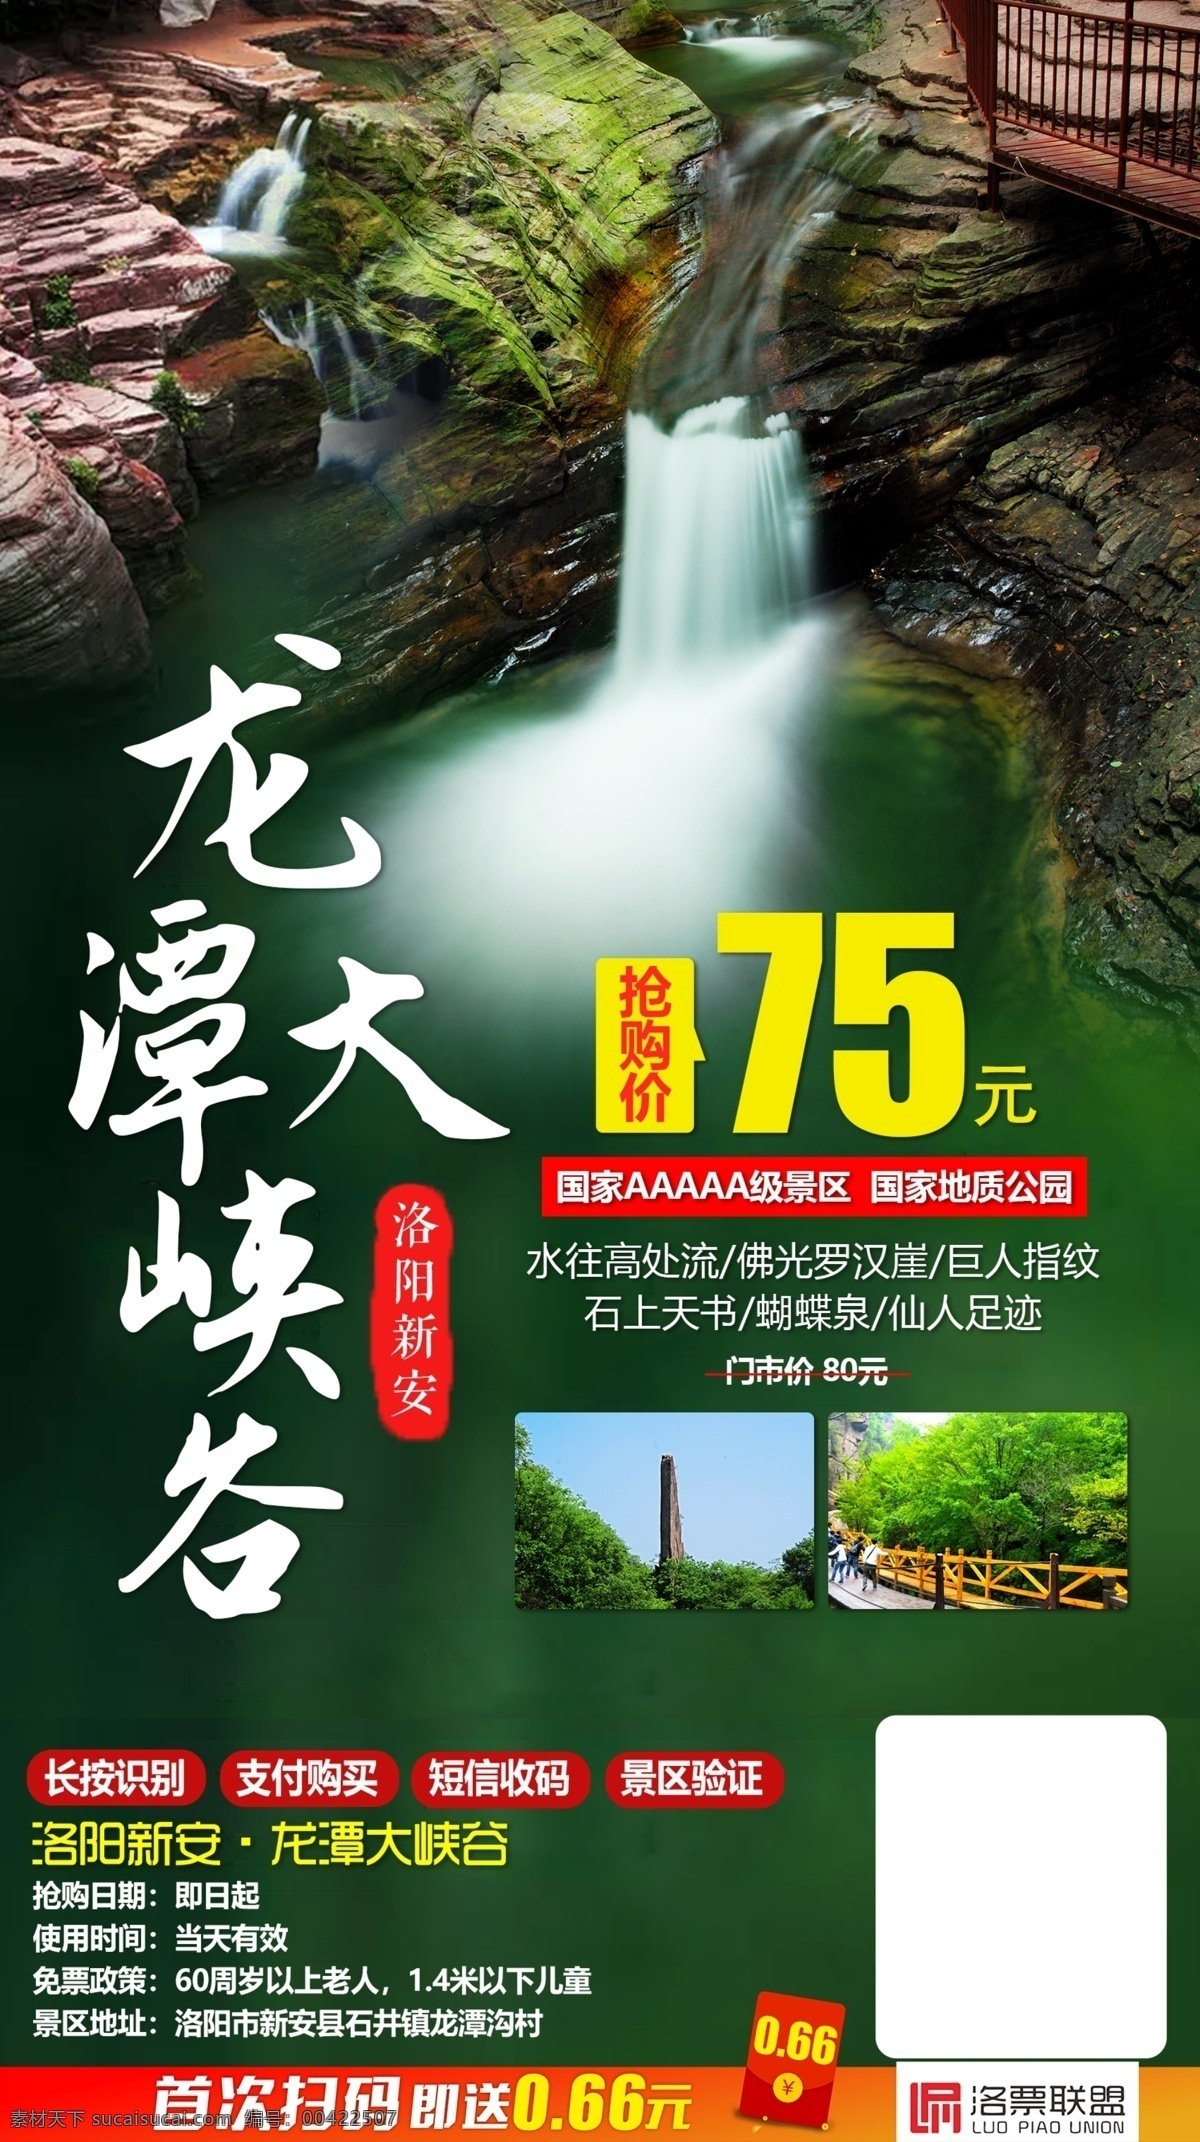 旅游海报 旅游 旅游展板 一日游 景区景点 龙潭峡 旅游手机海报